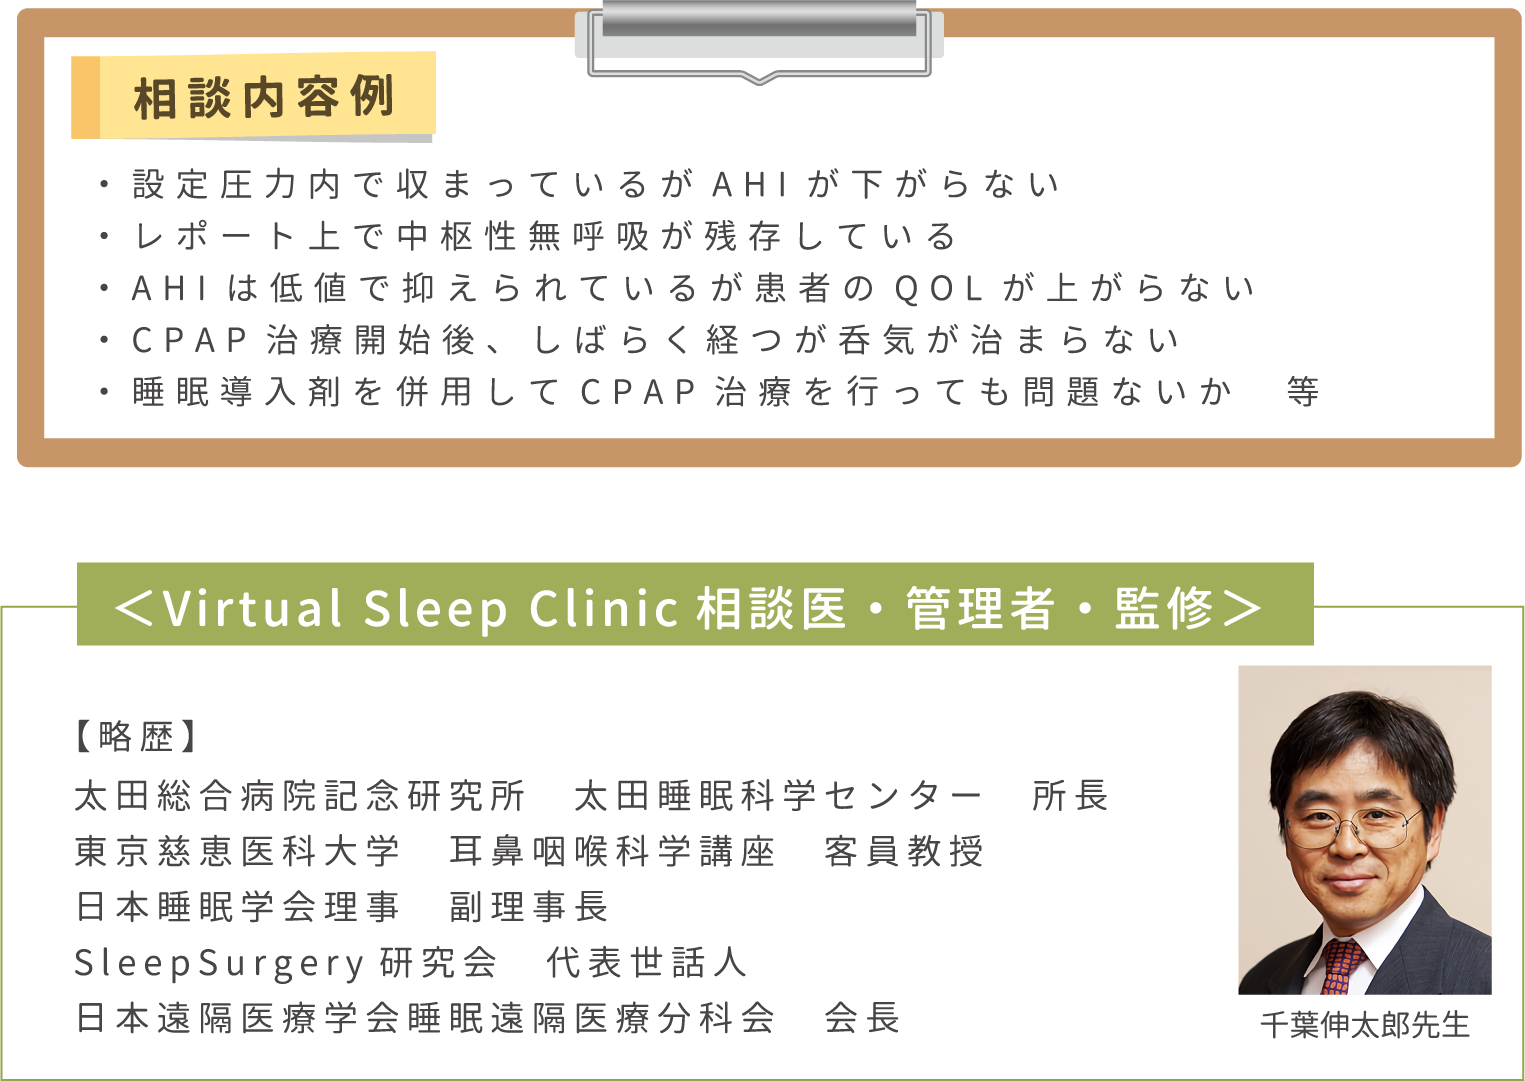 相談内容・Virtual Sleep Clinic相談医・管理者・監修 